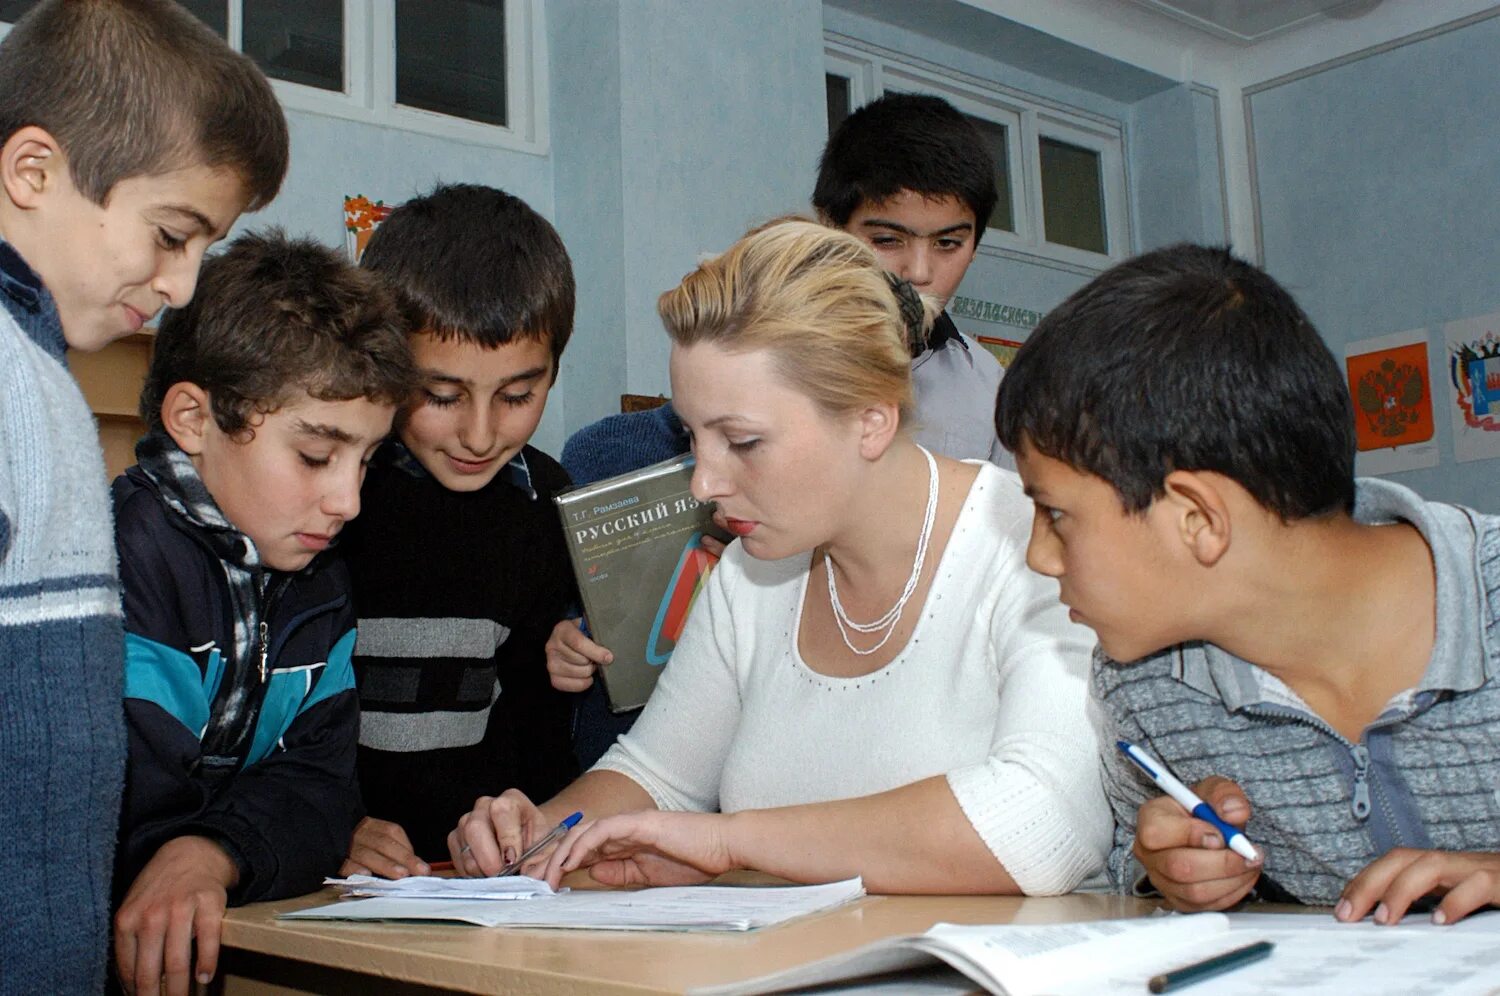 Дети мигранты в школе. Нерусские дети в школе. Дети мигрантов в российских школах. Дети мигрантов в русской школе.